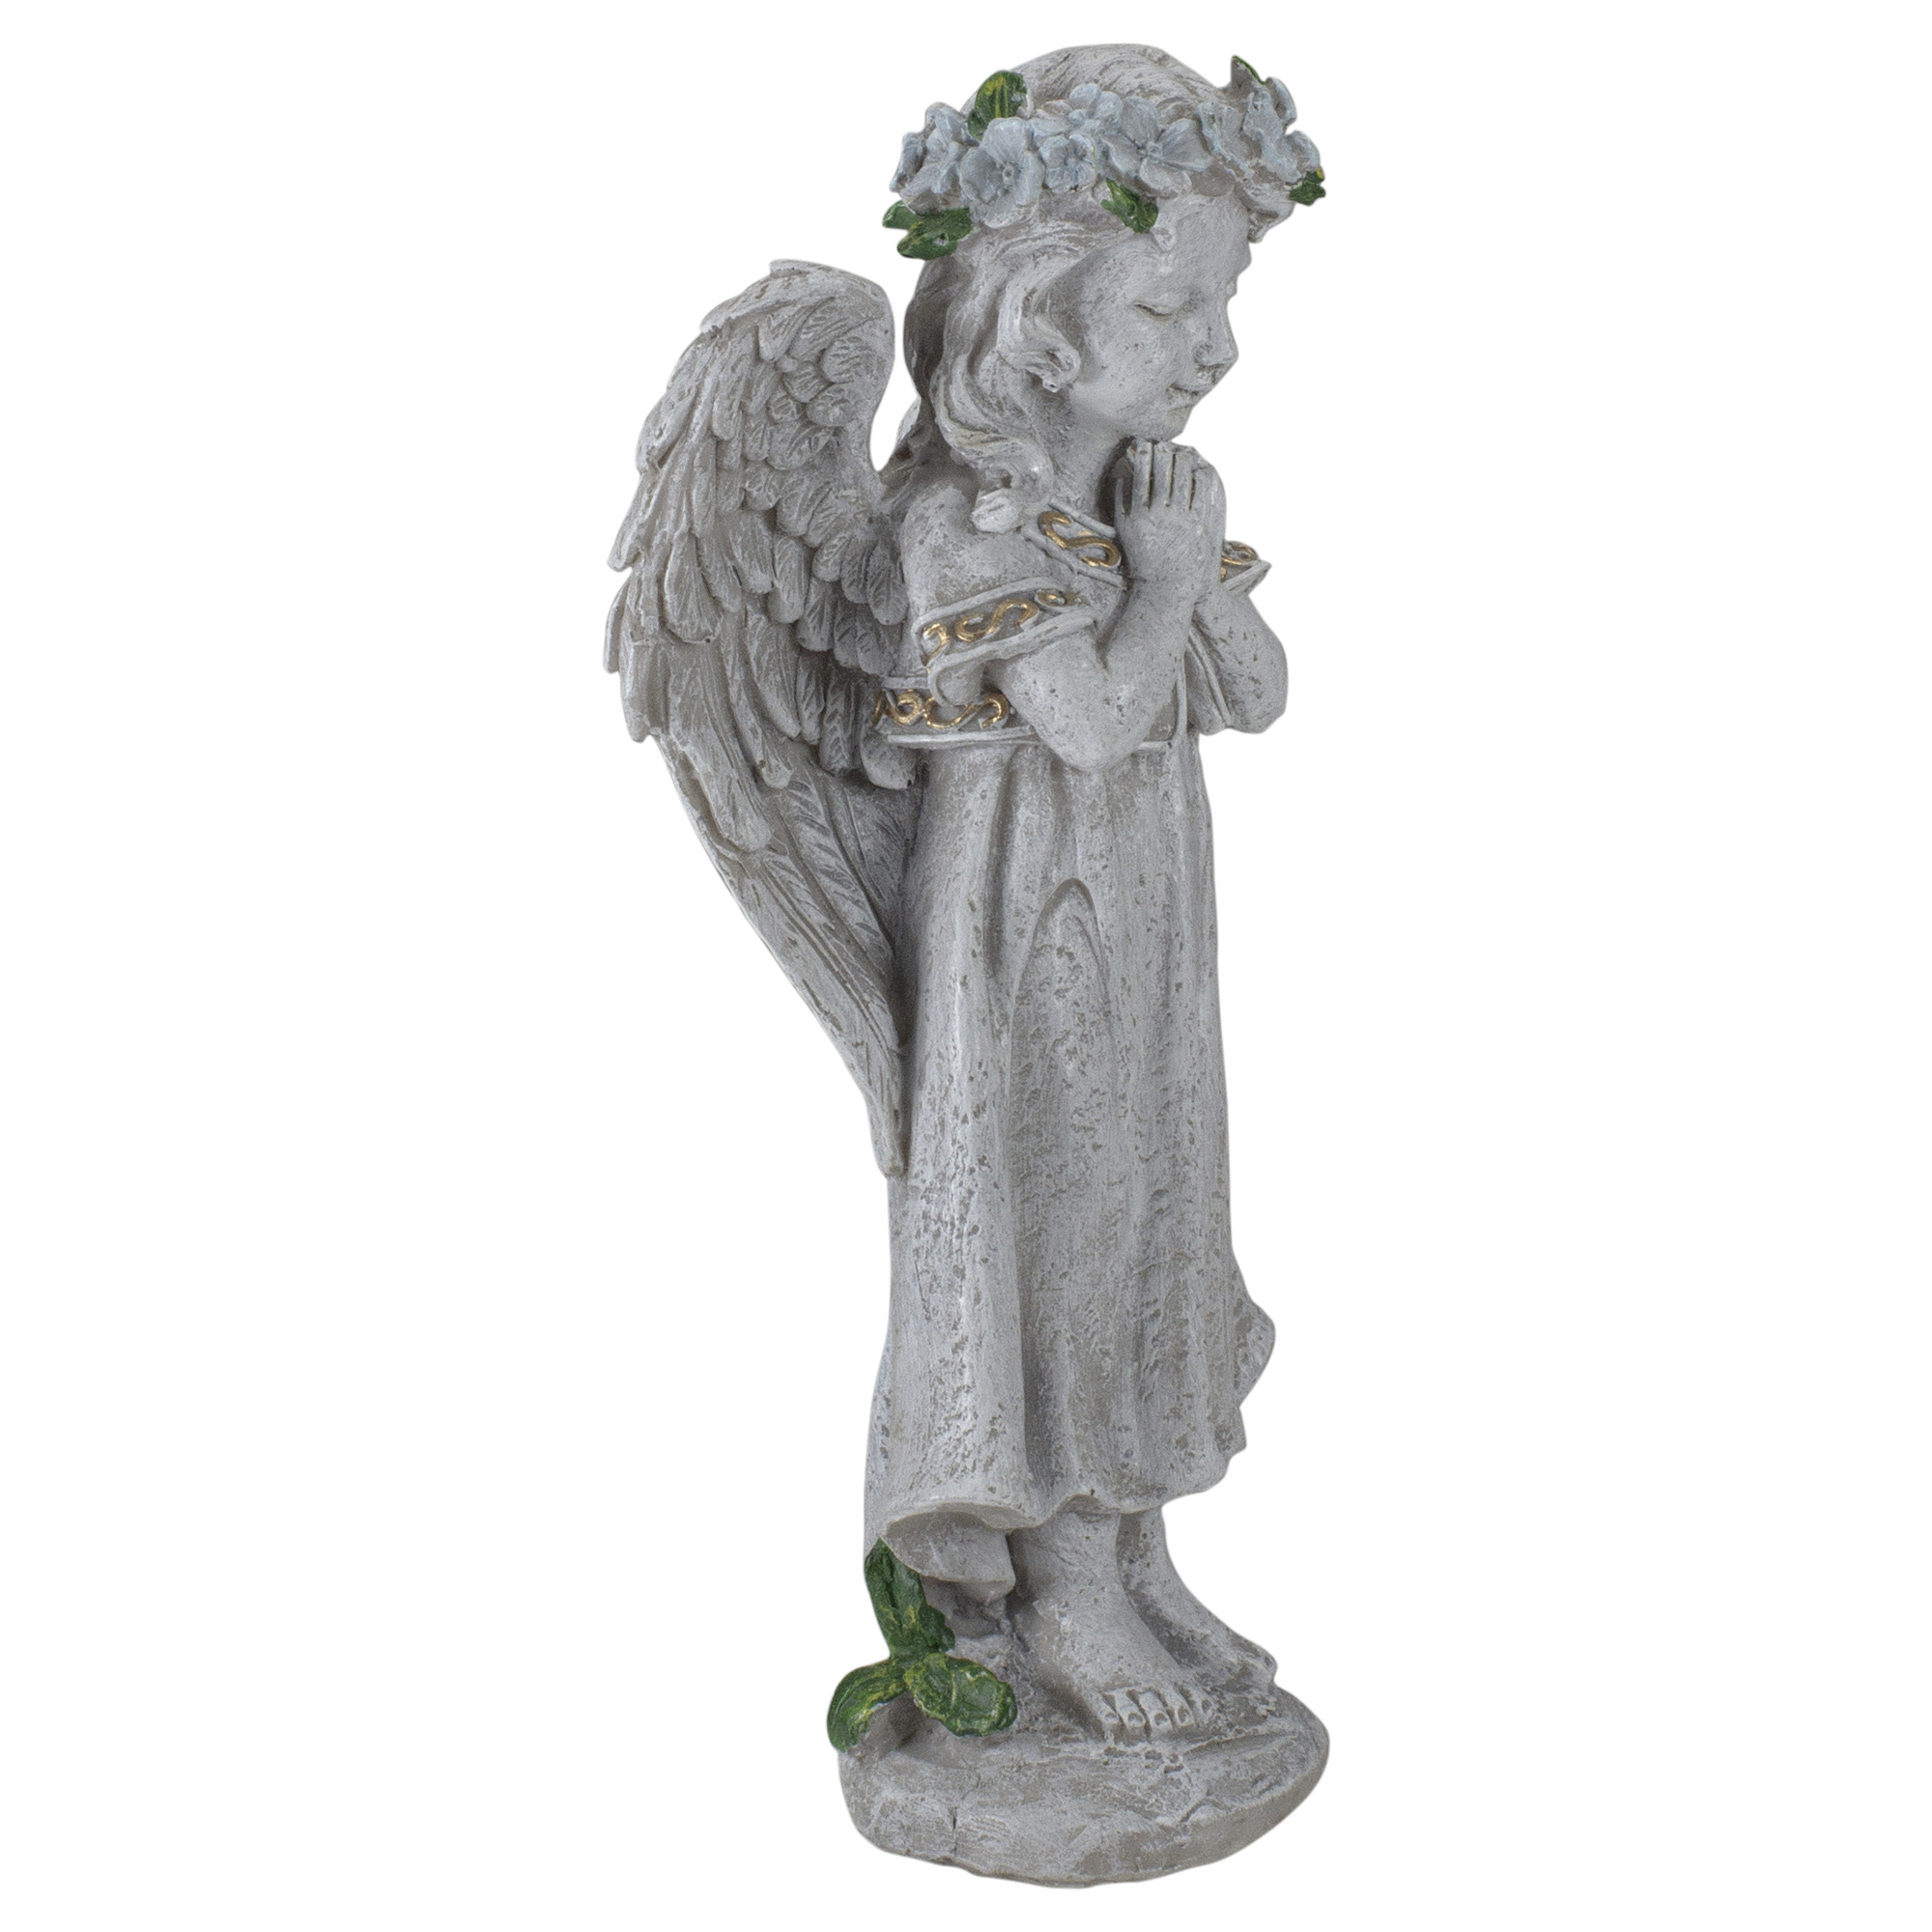 Northlight 10" Angel Standing in Prayer Outdoor Garden Statue - image 5 of 5